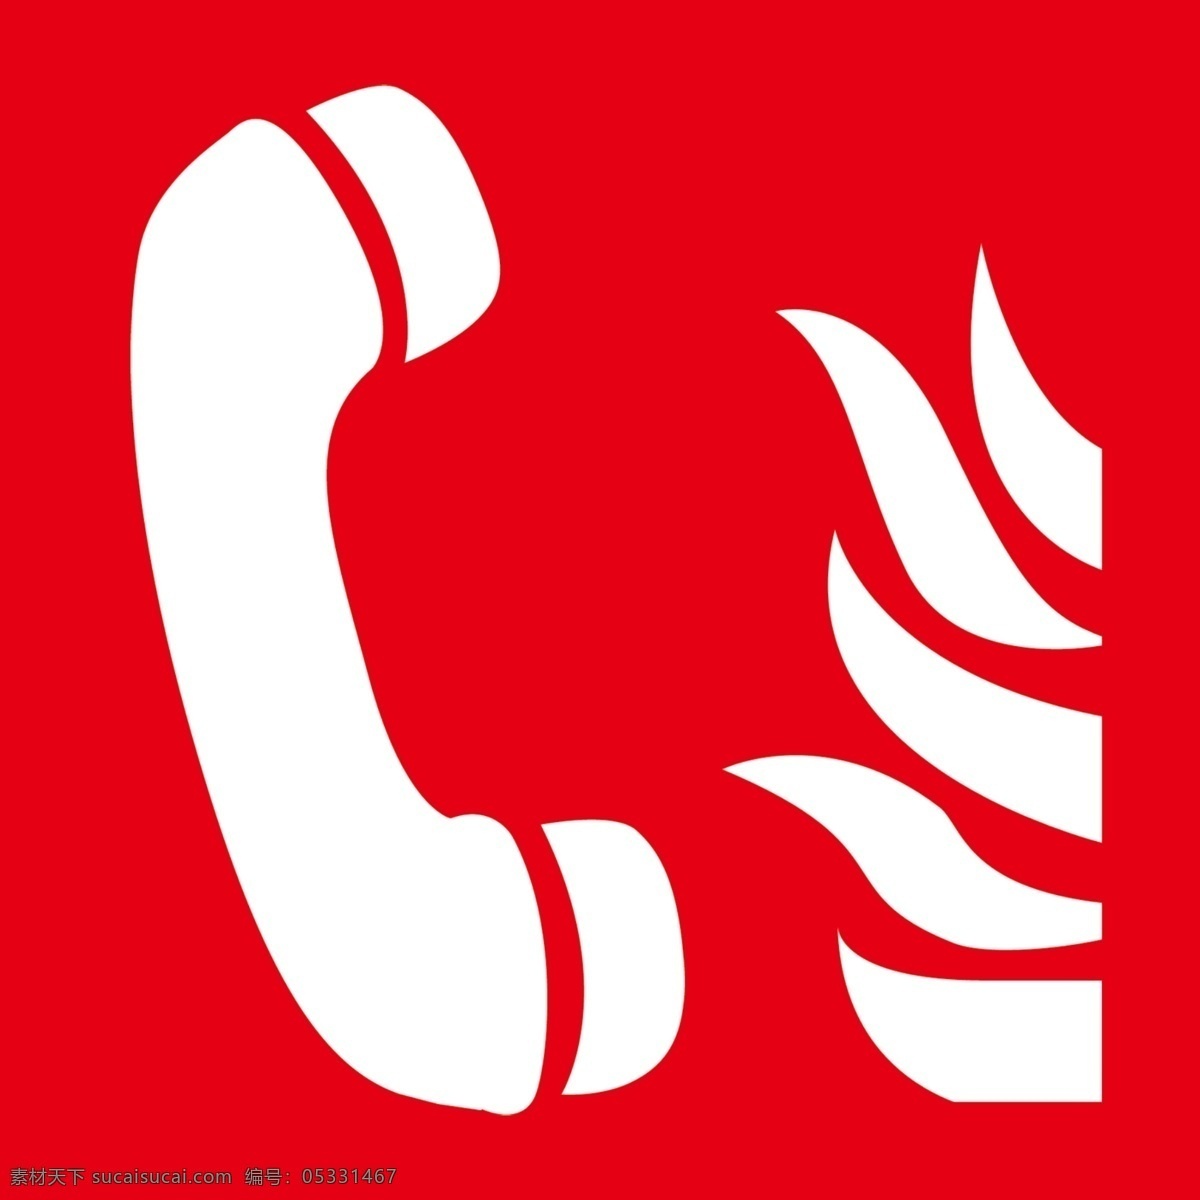 消防 专线 电话 标志 分层 源文件 消防水箱 标志图标 公共标识标志 消防专线 电话标志